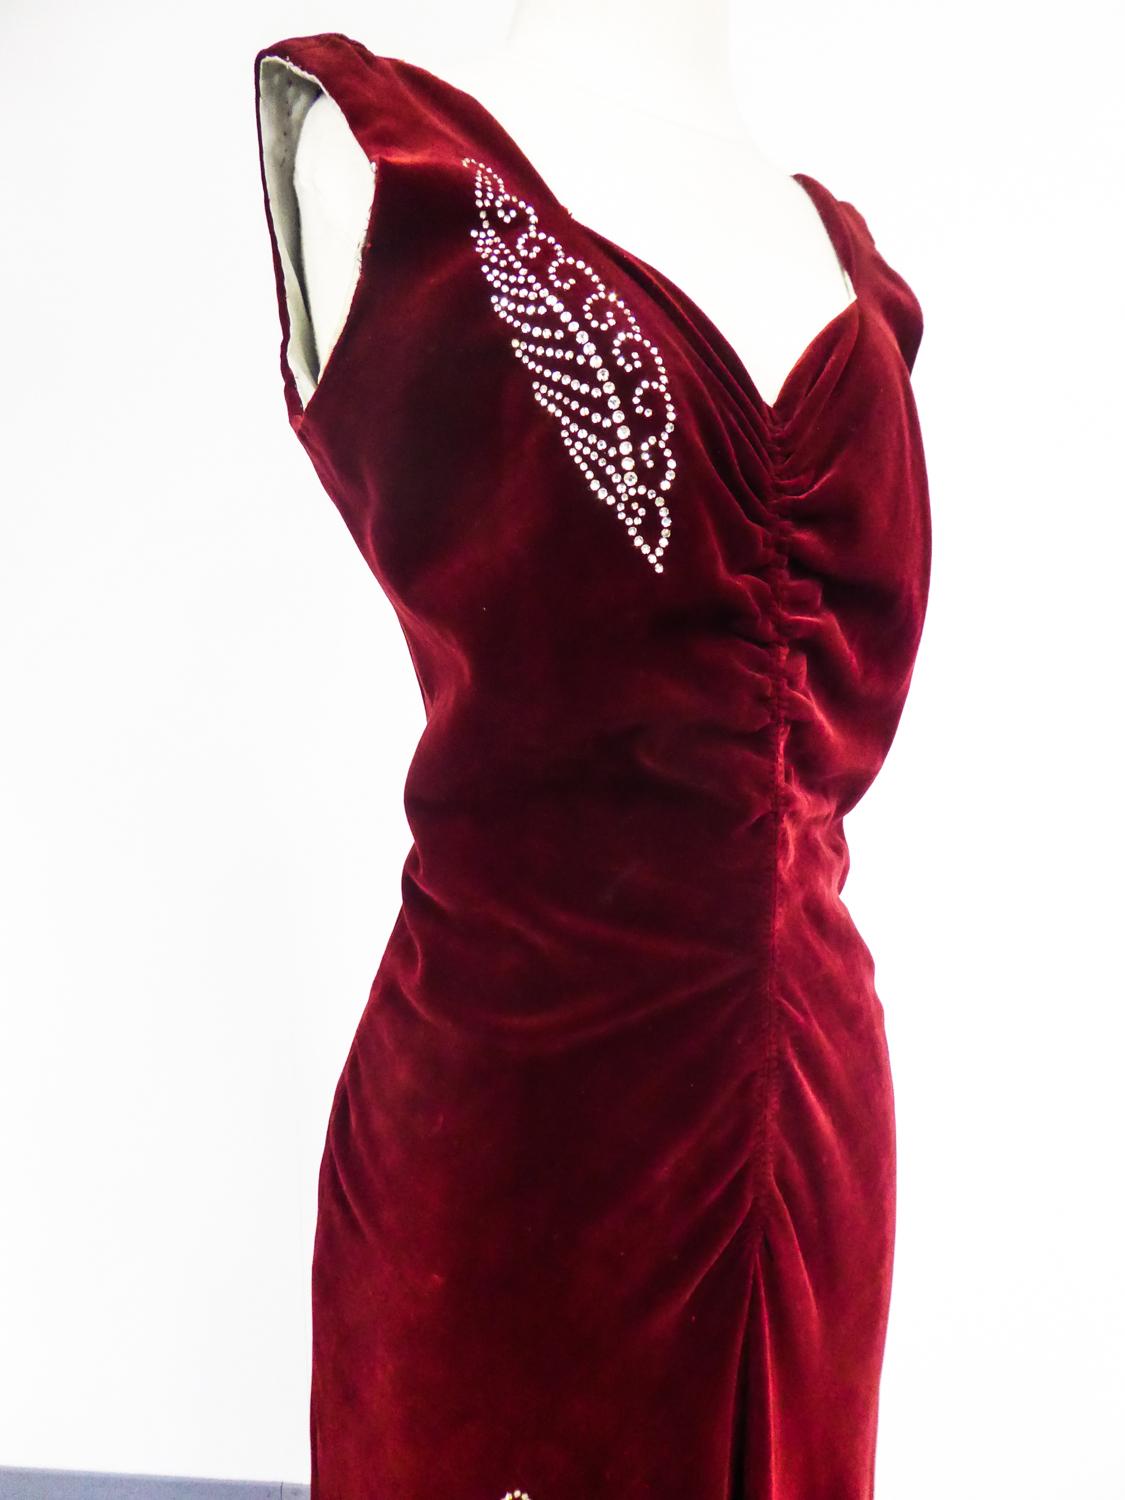 Um 1935
Frankreich

Seltenes langes Abendkleid für Sammler, französische Haute Couture von Nicole Groult, der berühmten Schwester von Paul Poiret, aus den 1935er Jahren. Ärmelloses Kleid aus karminrotem Seidensamt, unterlegt mit einer